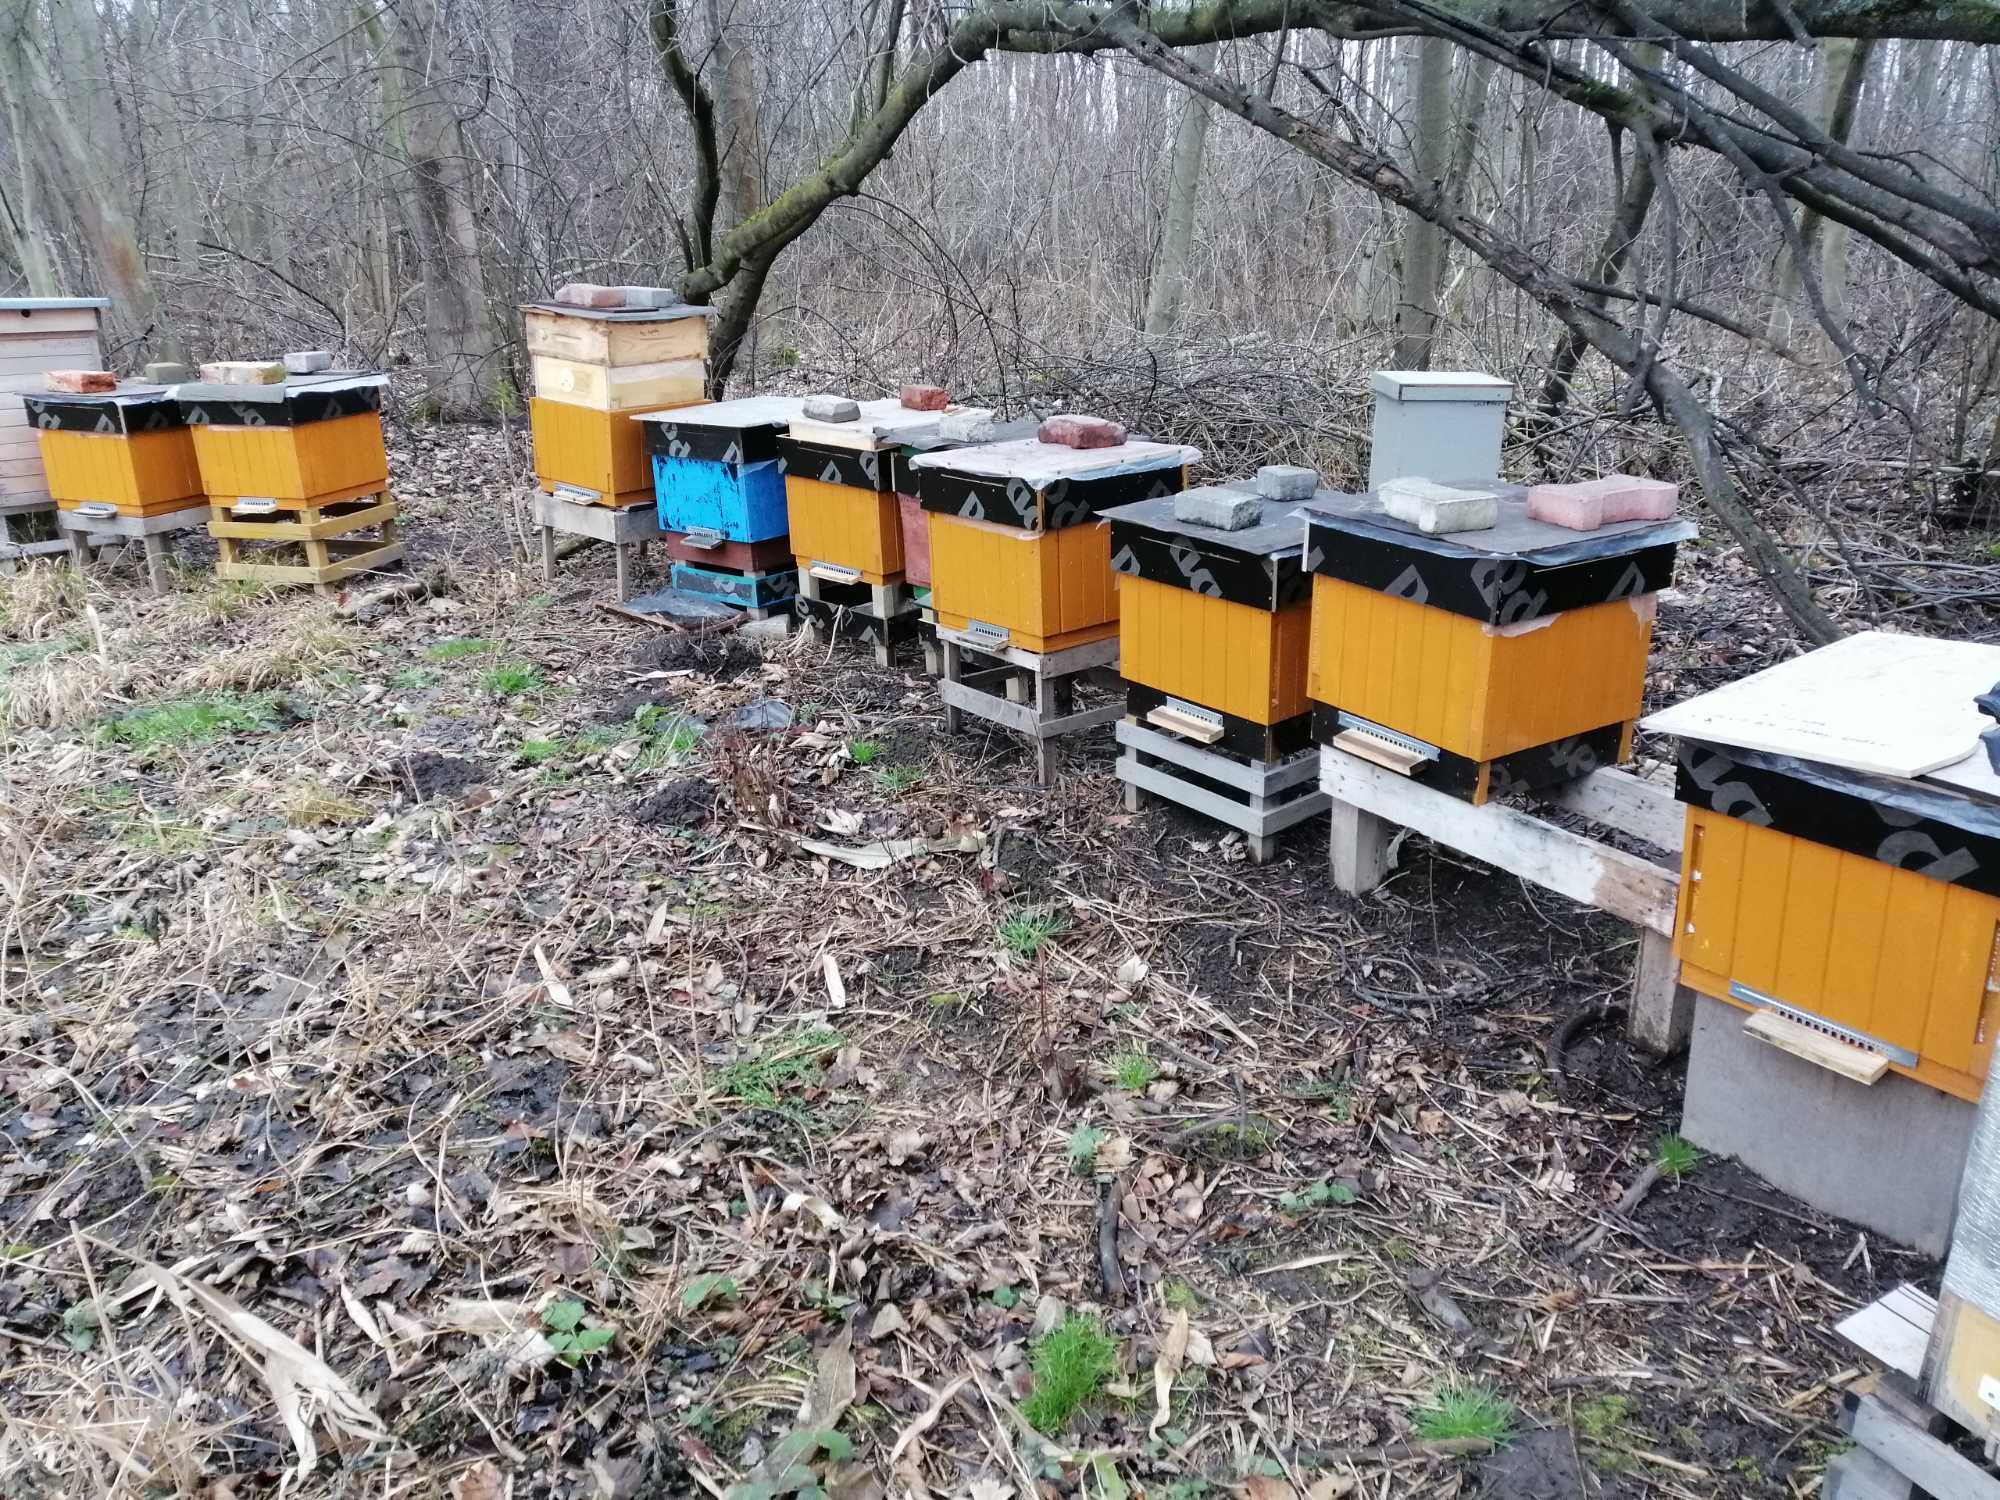 Pszczoly odklady pszczele rodziny pszczele